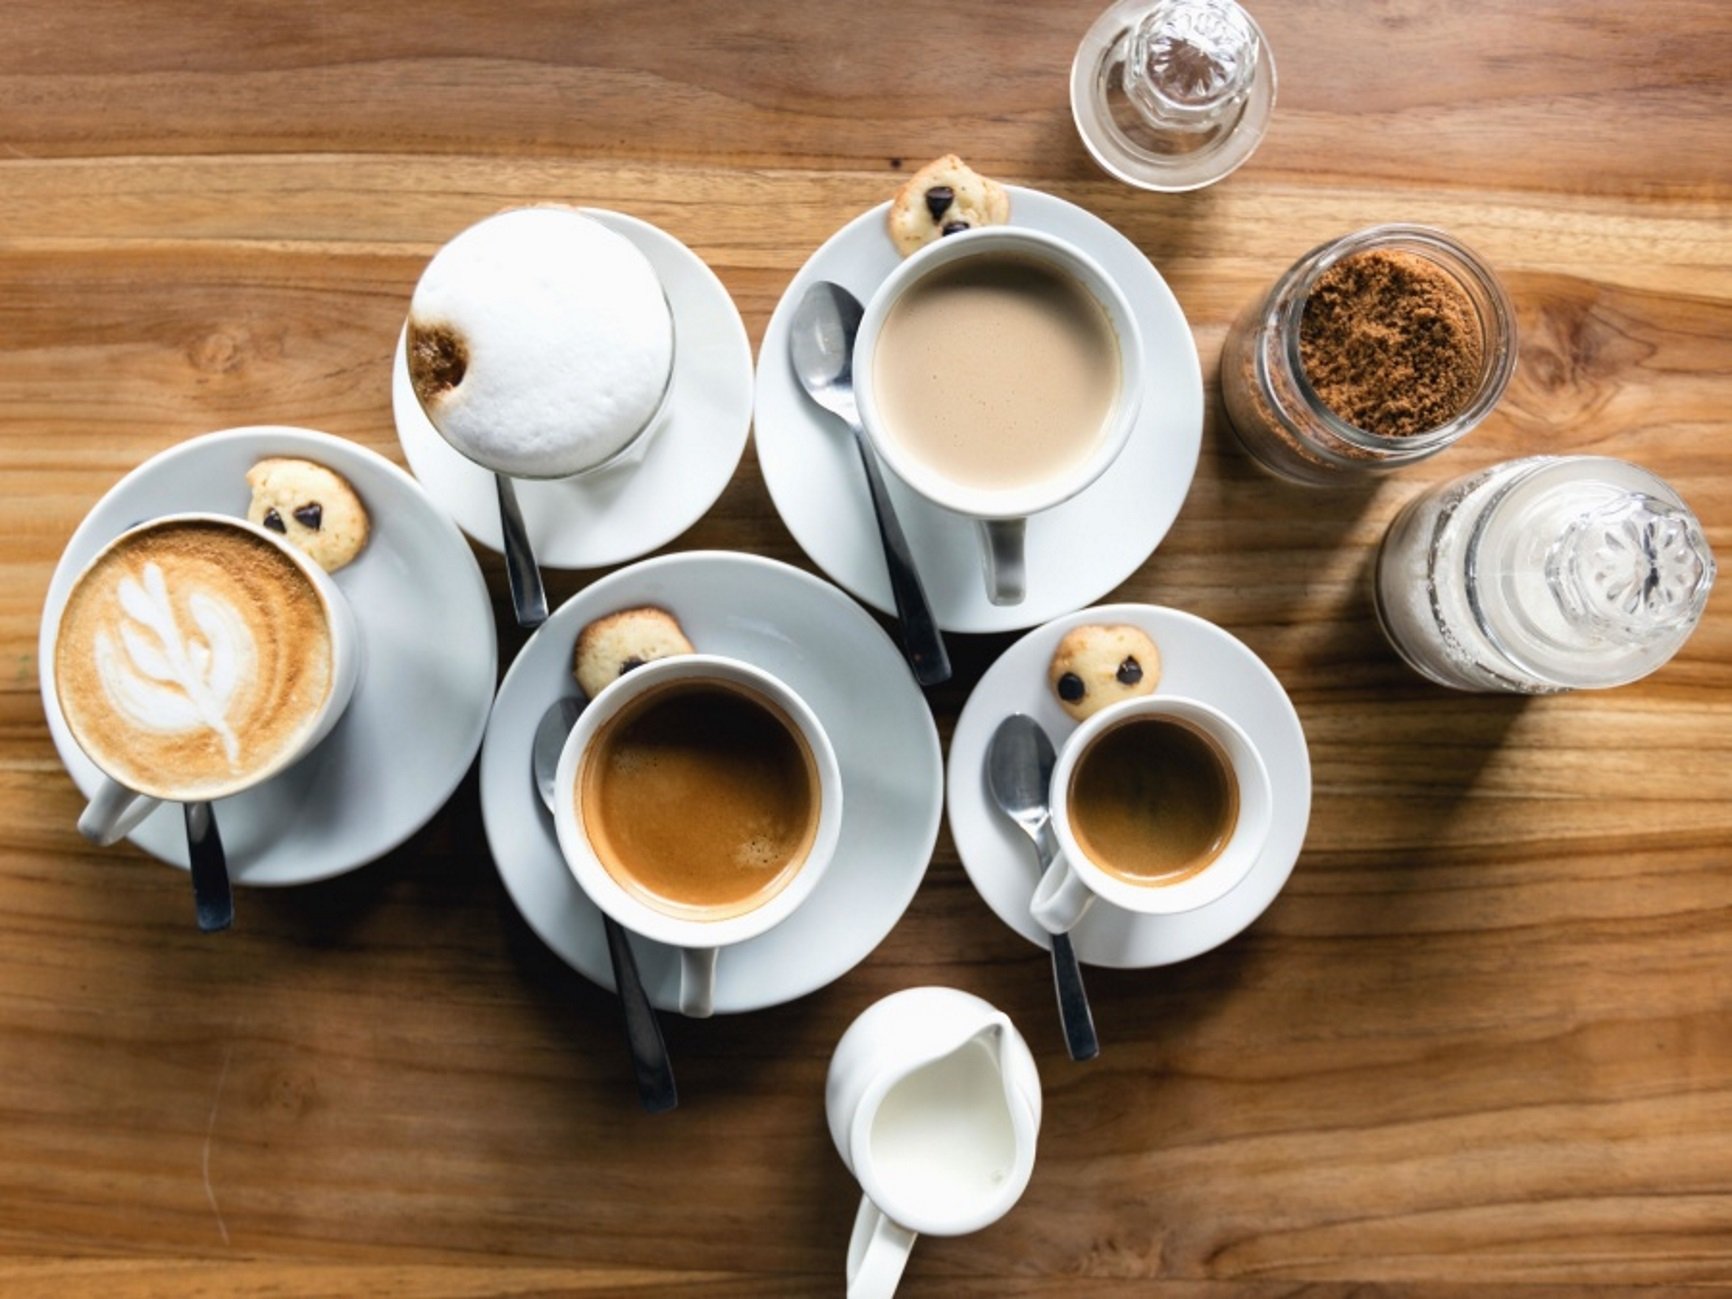 Tomar café reduce la mortalidad prematura según la OMS